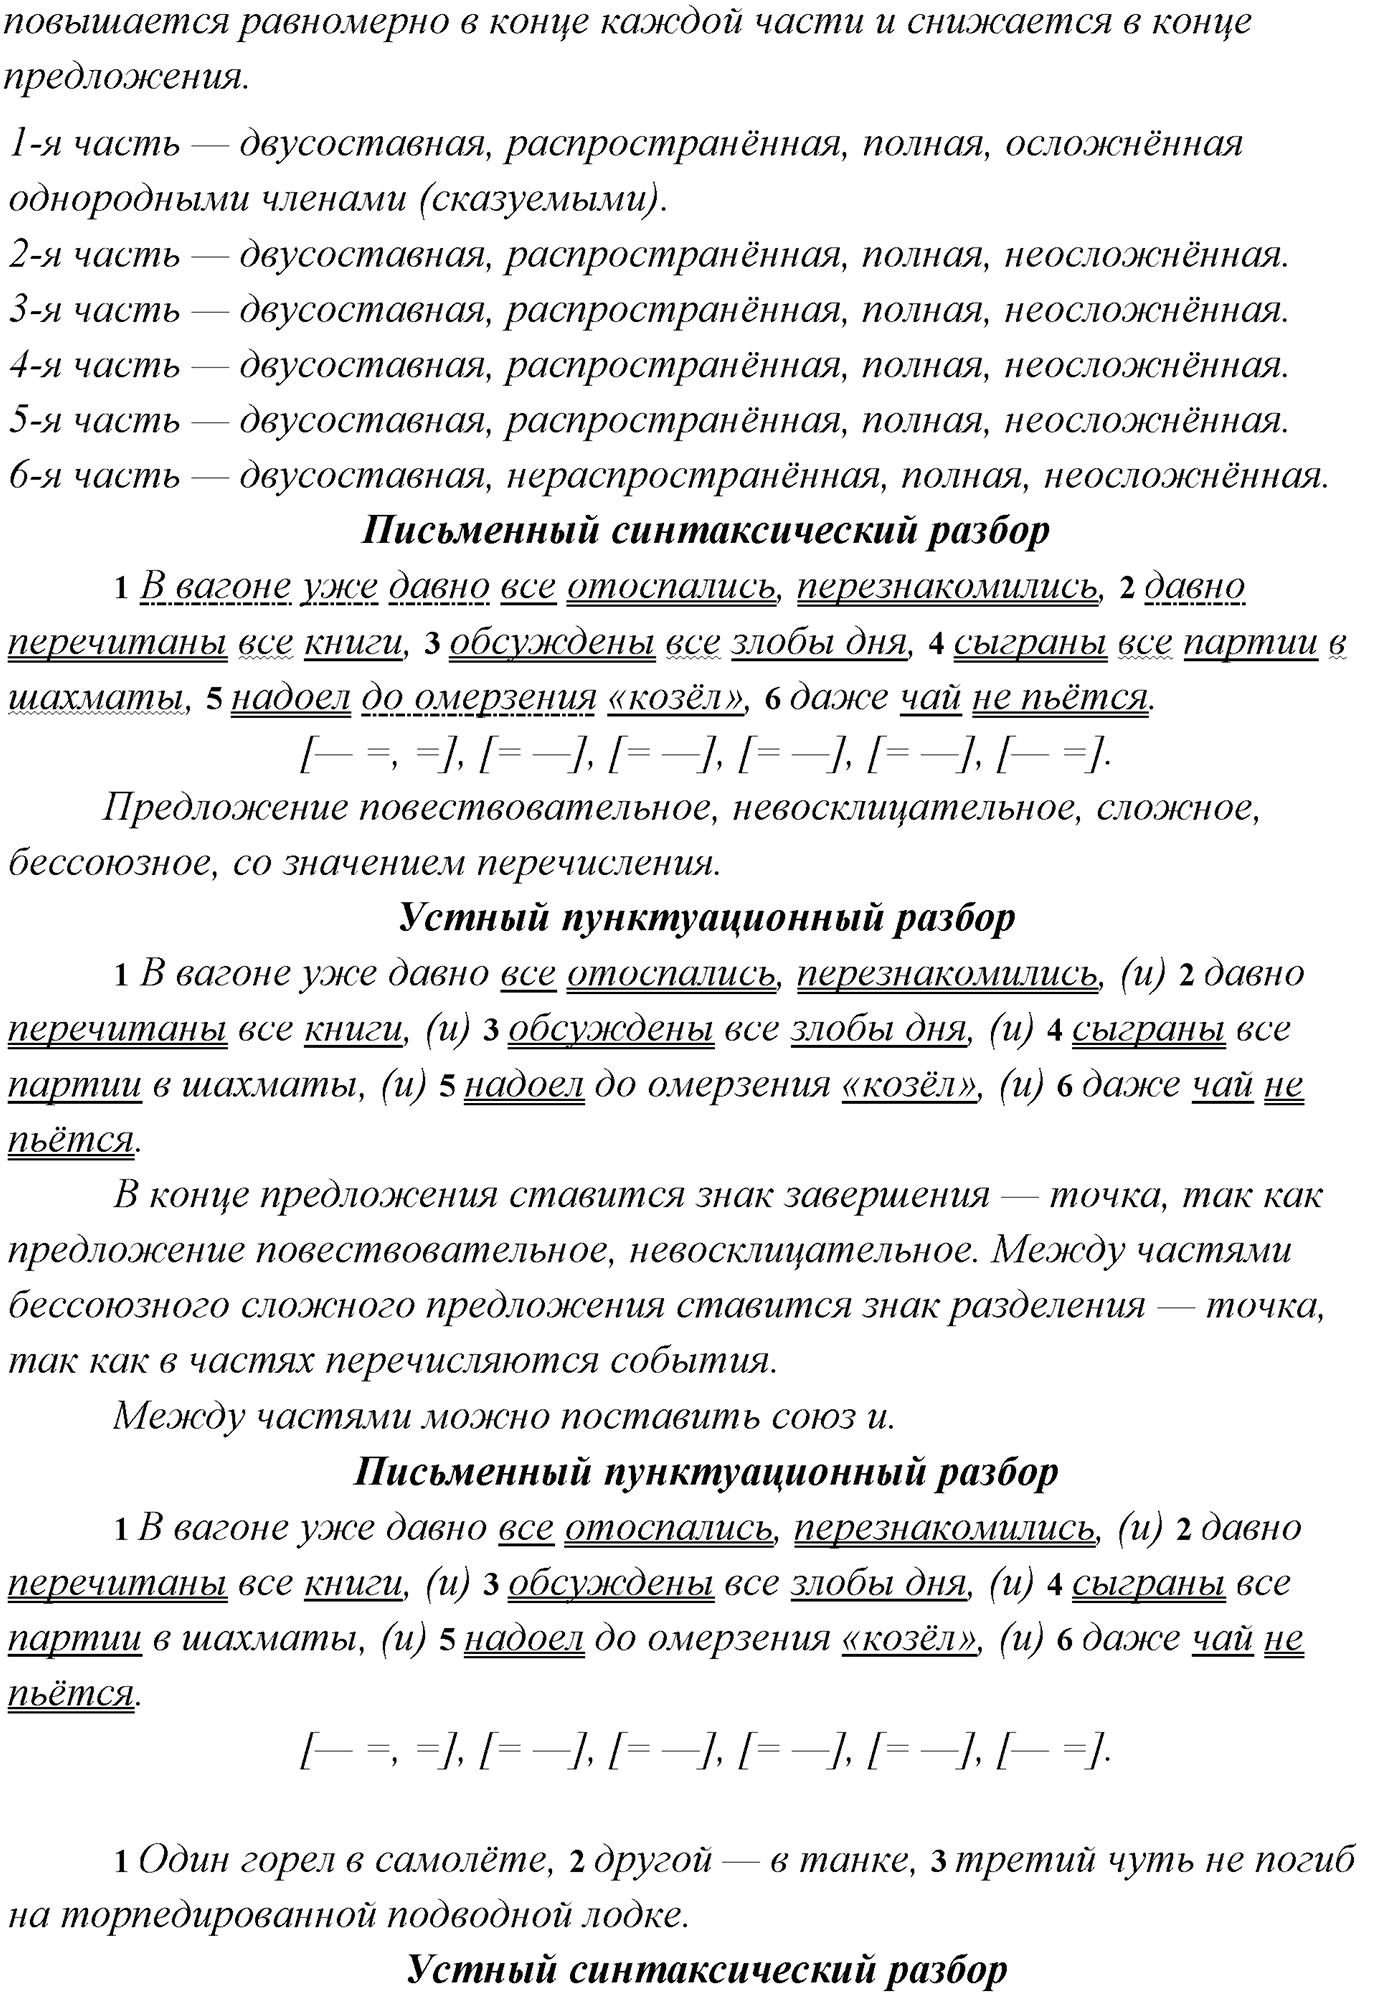 упражнение №309 русский язык 9 класс Рыбченкова, Александрова